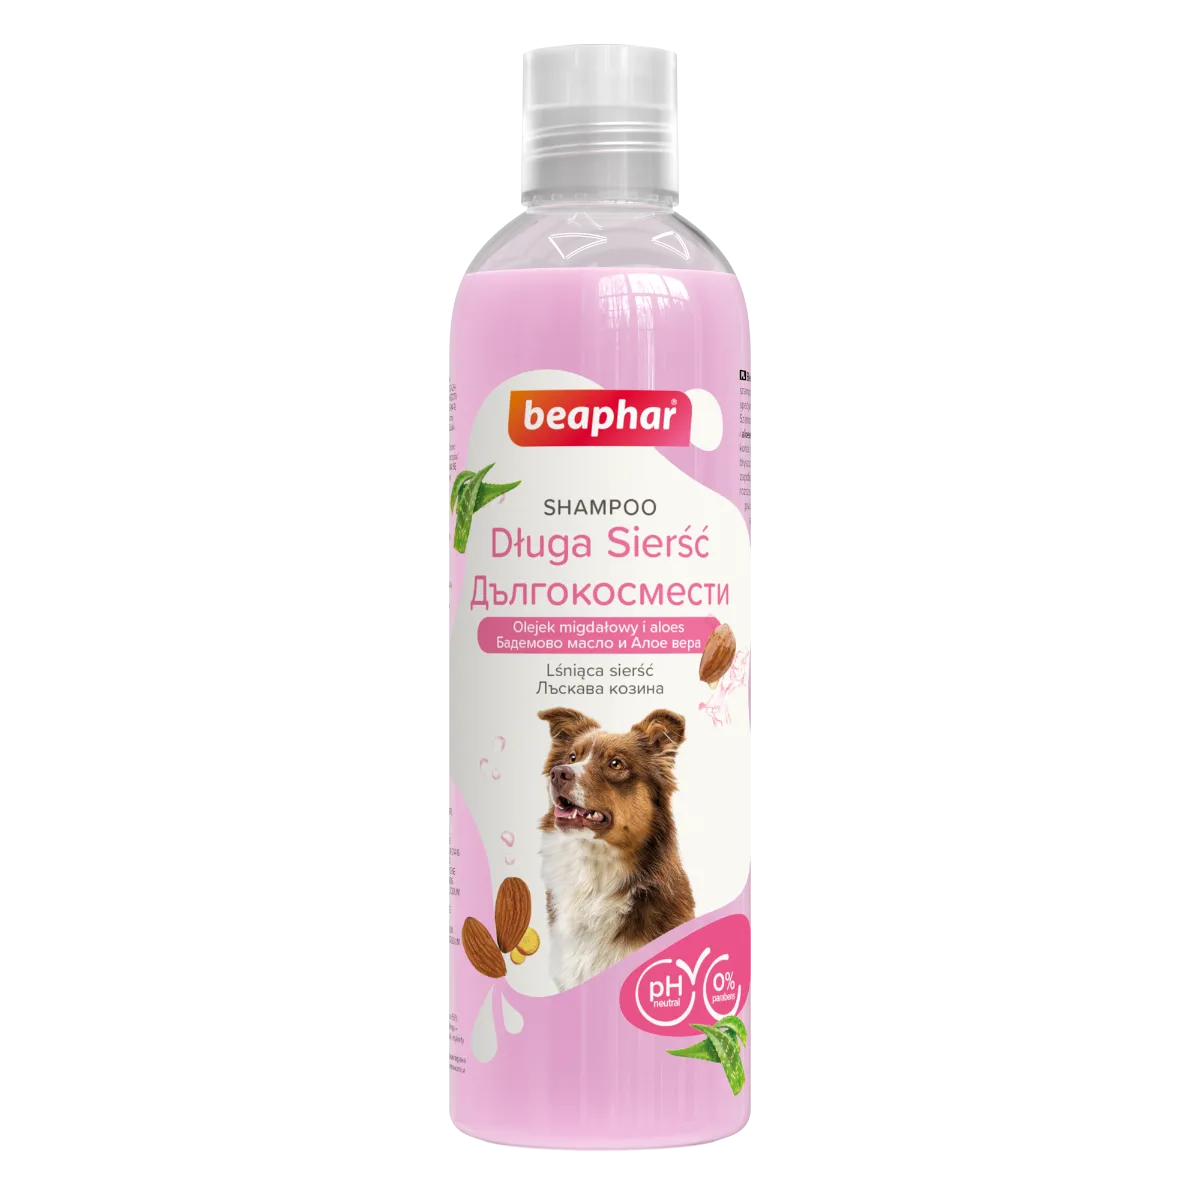 Beaphar Shampoo Long Coat Szampon dla psów długowłosych, 250 ml